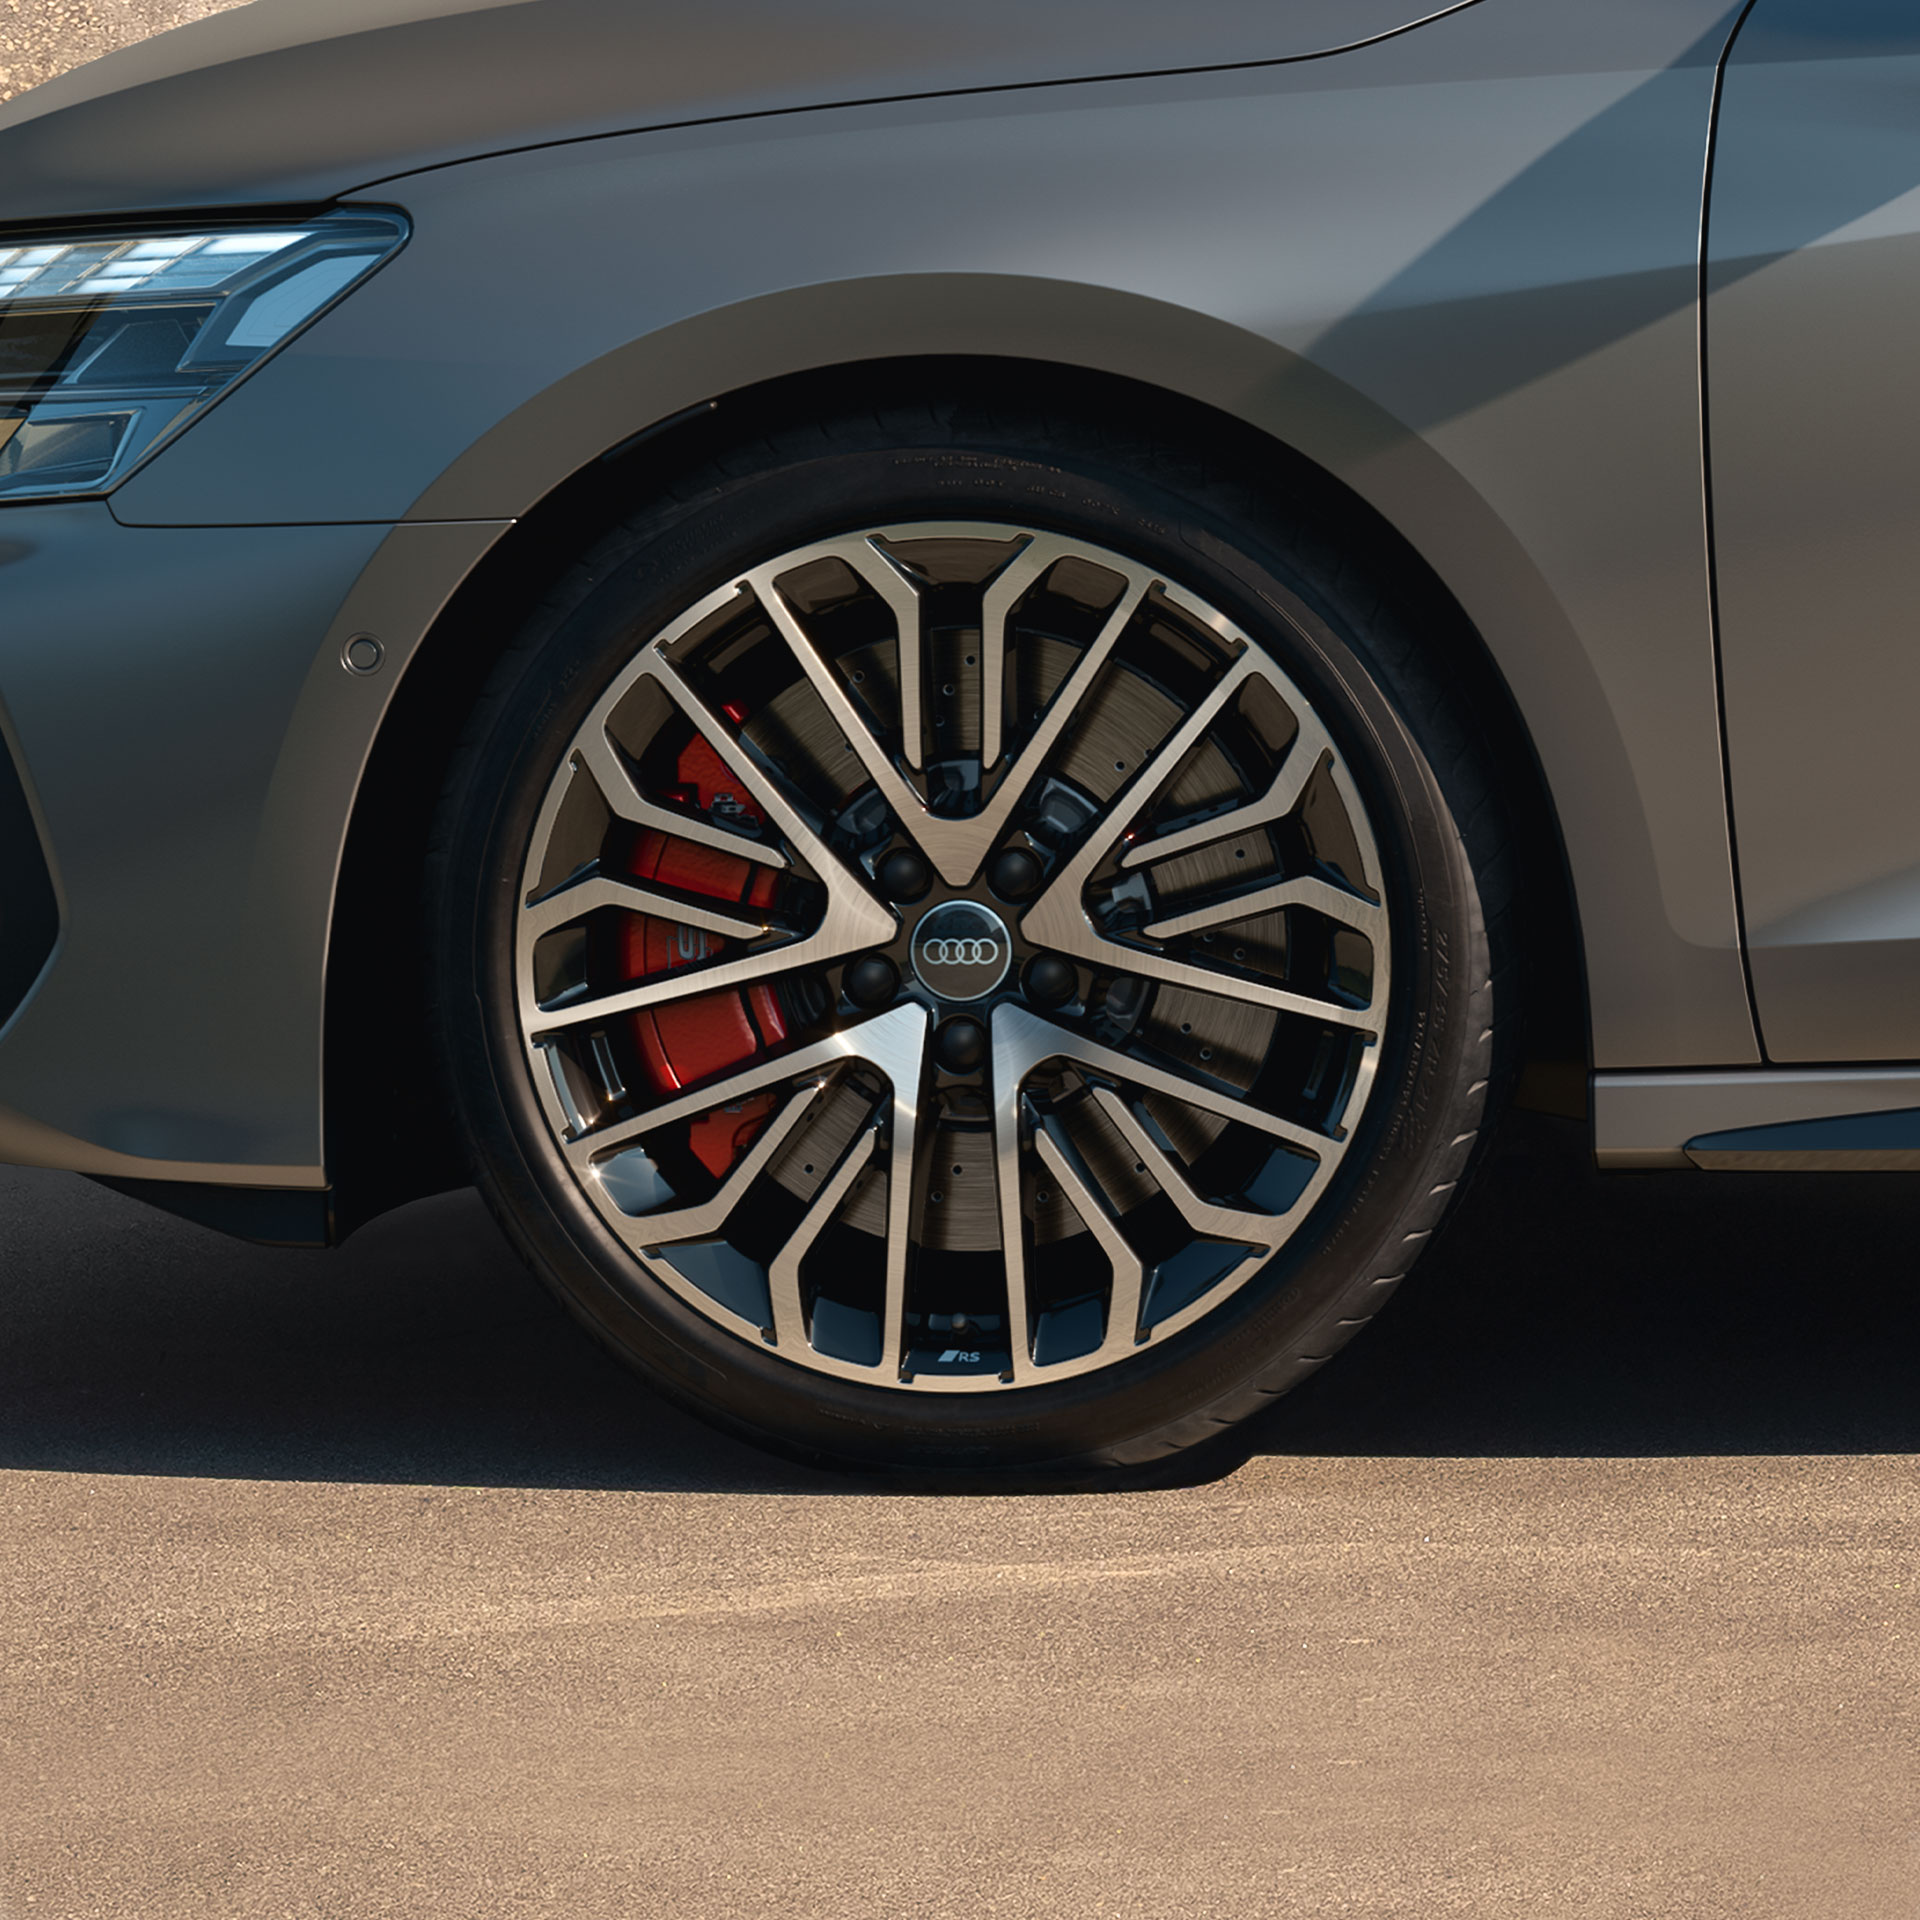 Audi S3 Zobrazení pneumatik